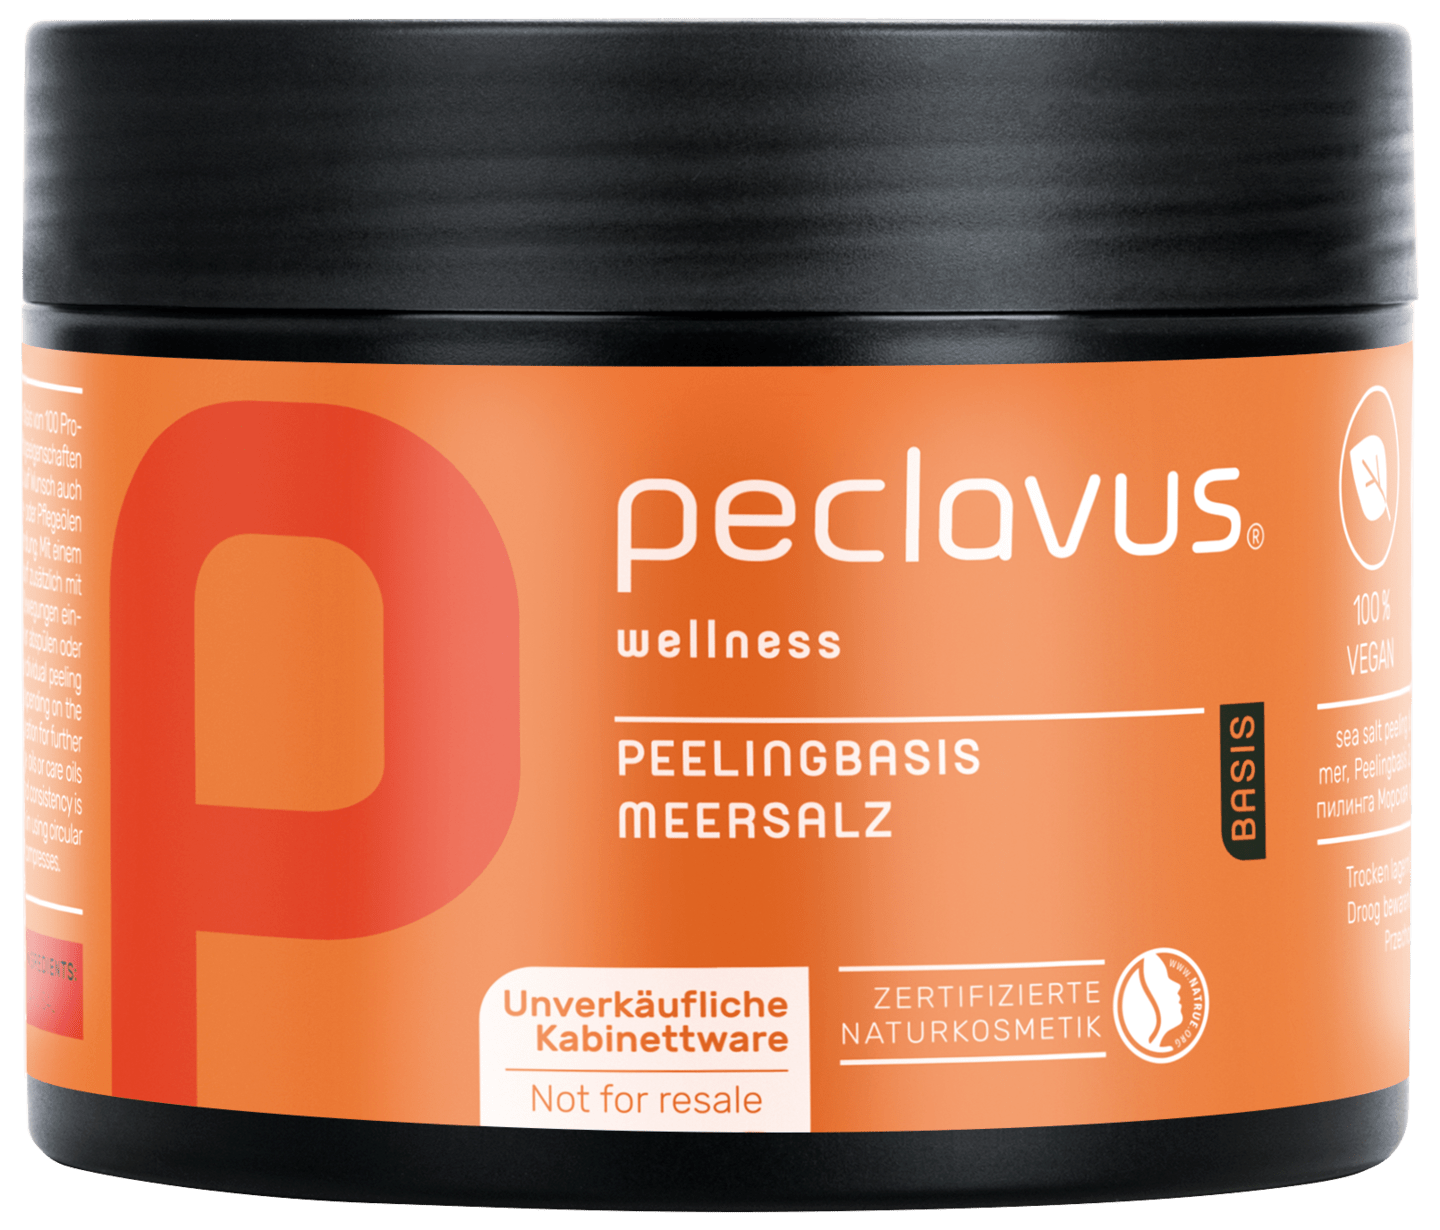 peclavus - Peelingbasis Meersalz | Basis, 600 g